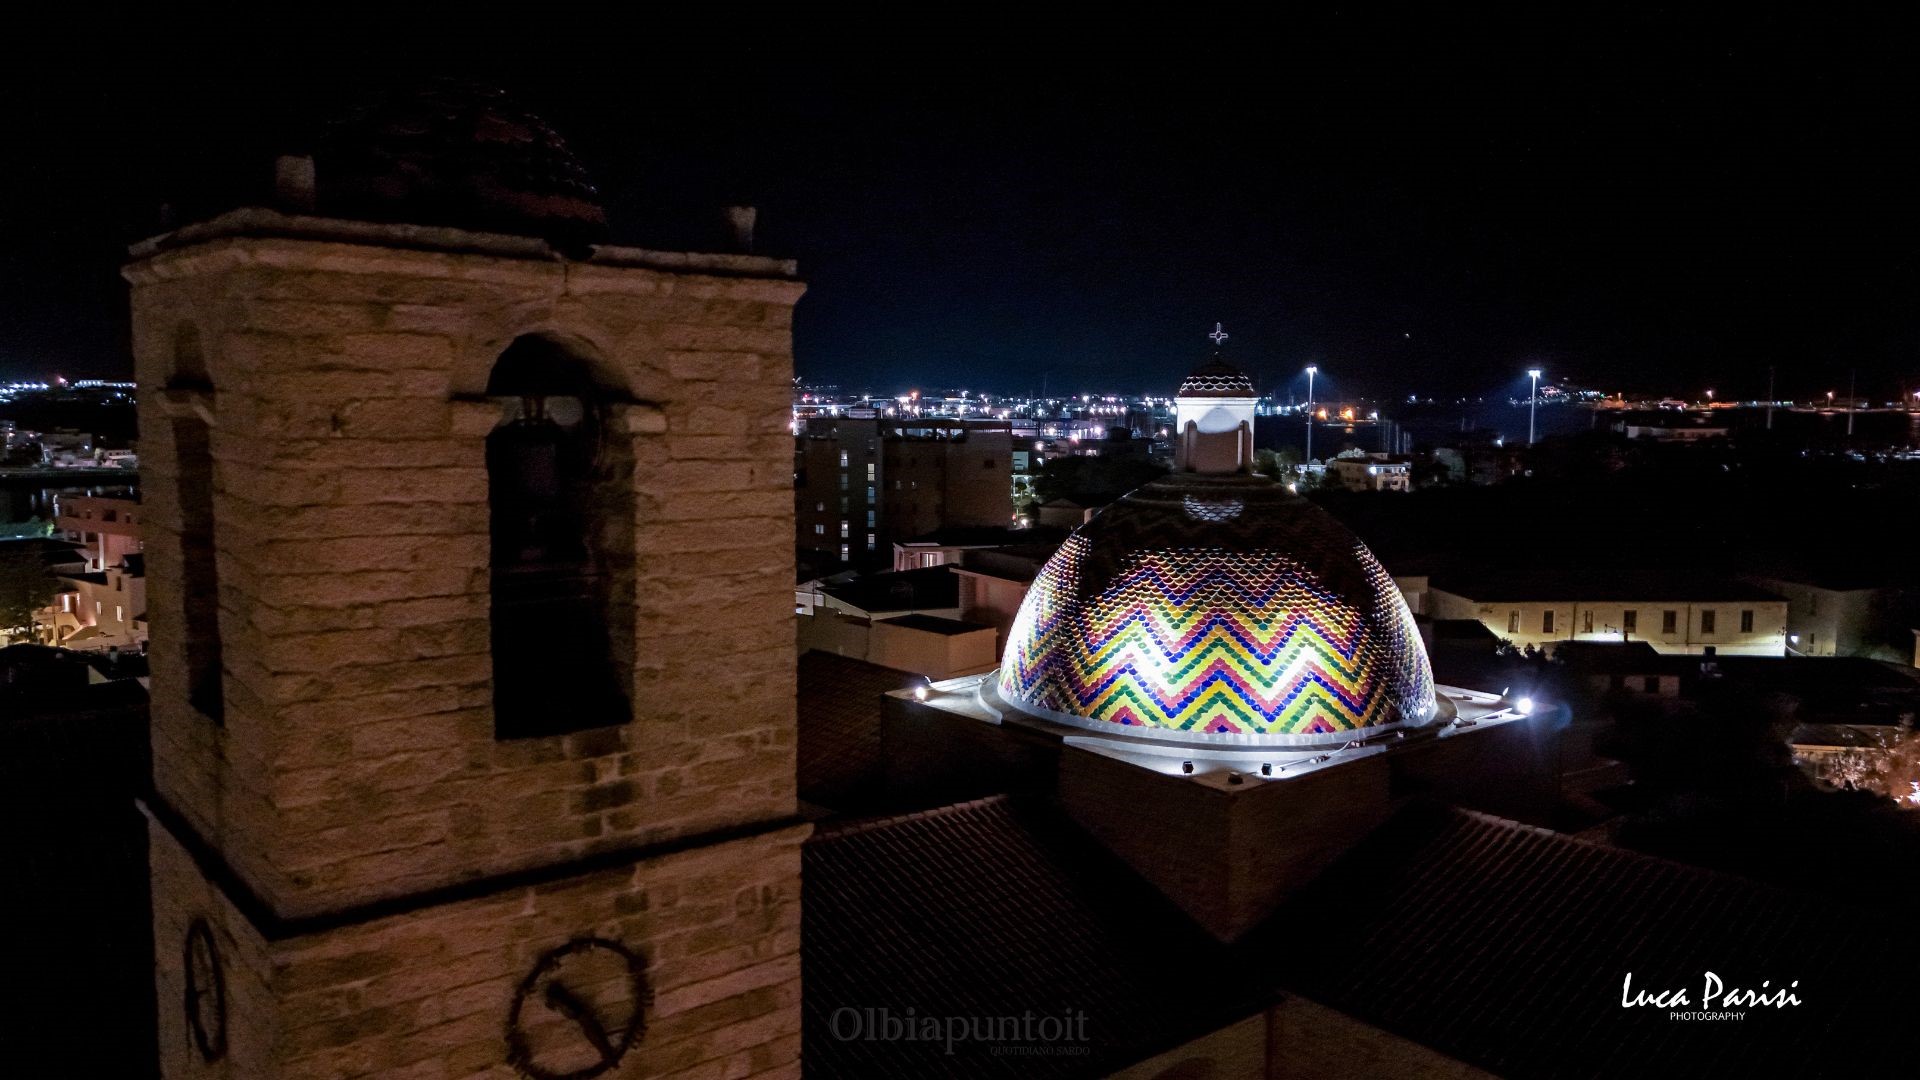 La cupola di San Paolo a Olbia: un'icona di luce negli scatti di Luca Parisi